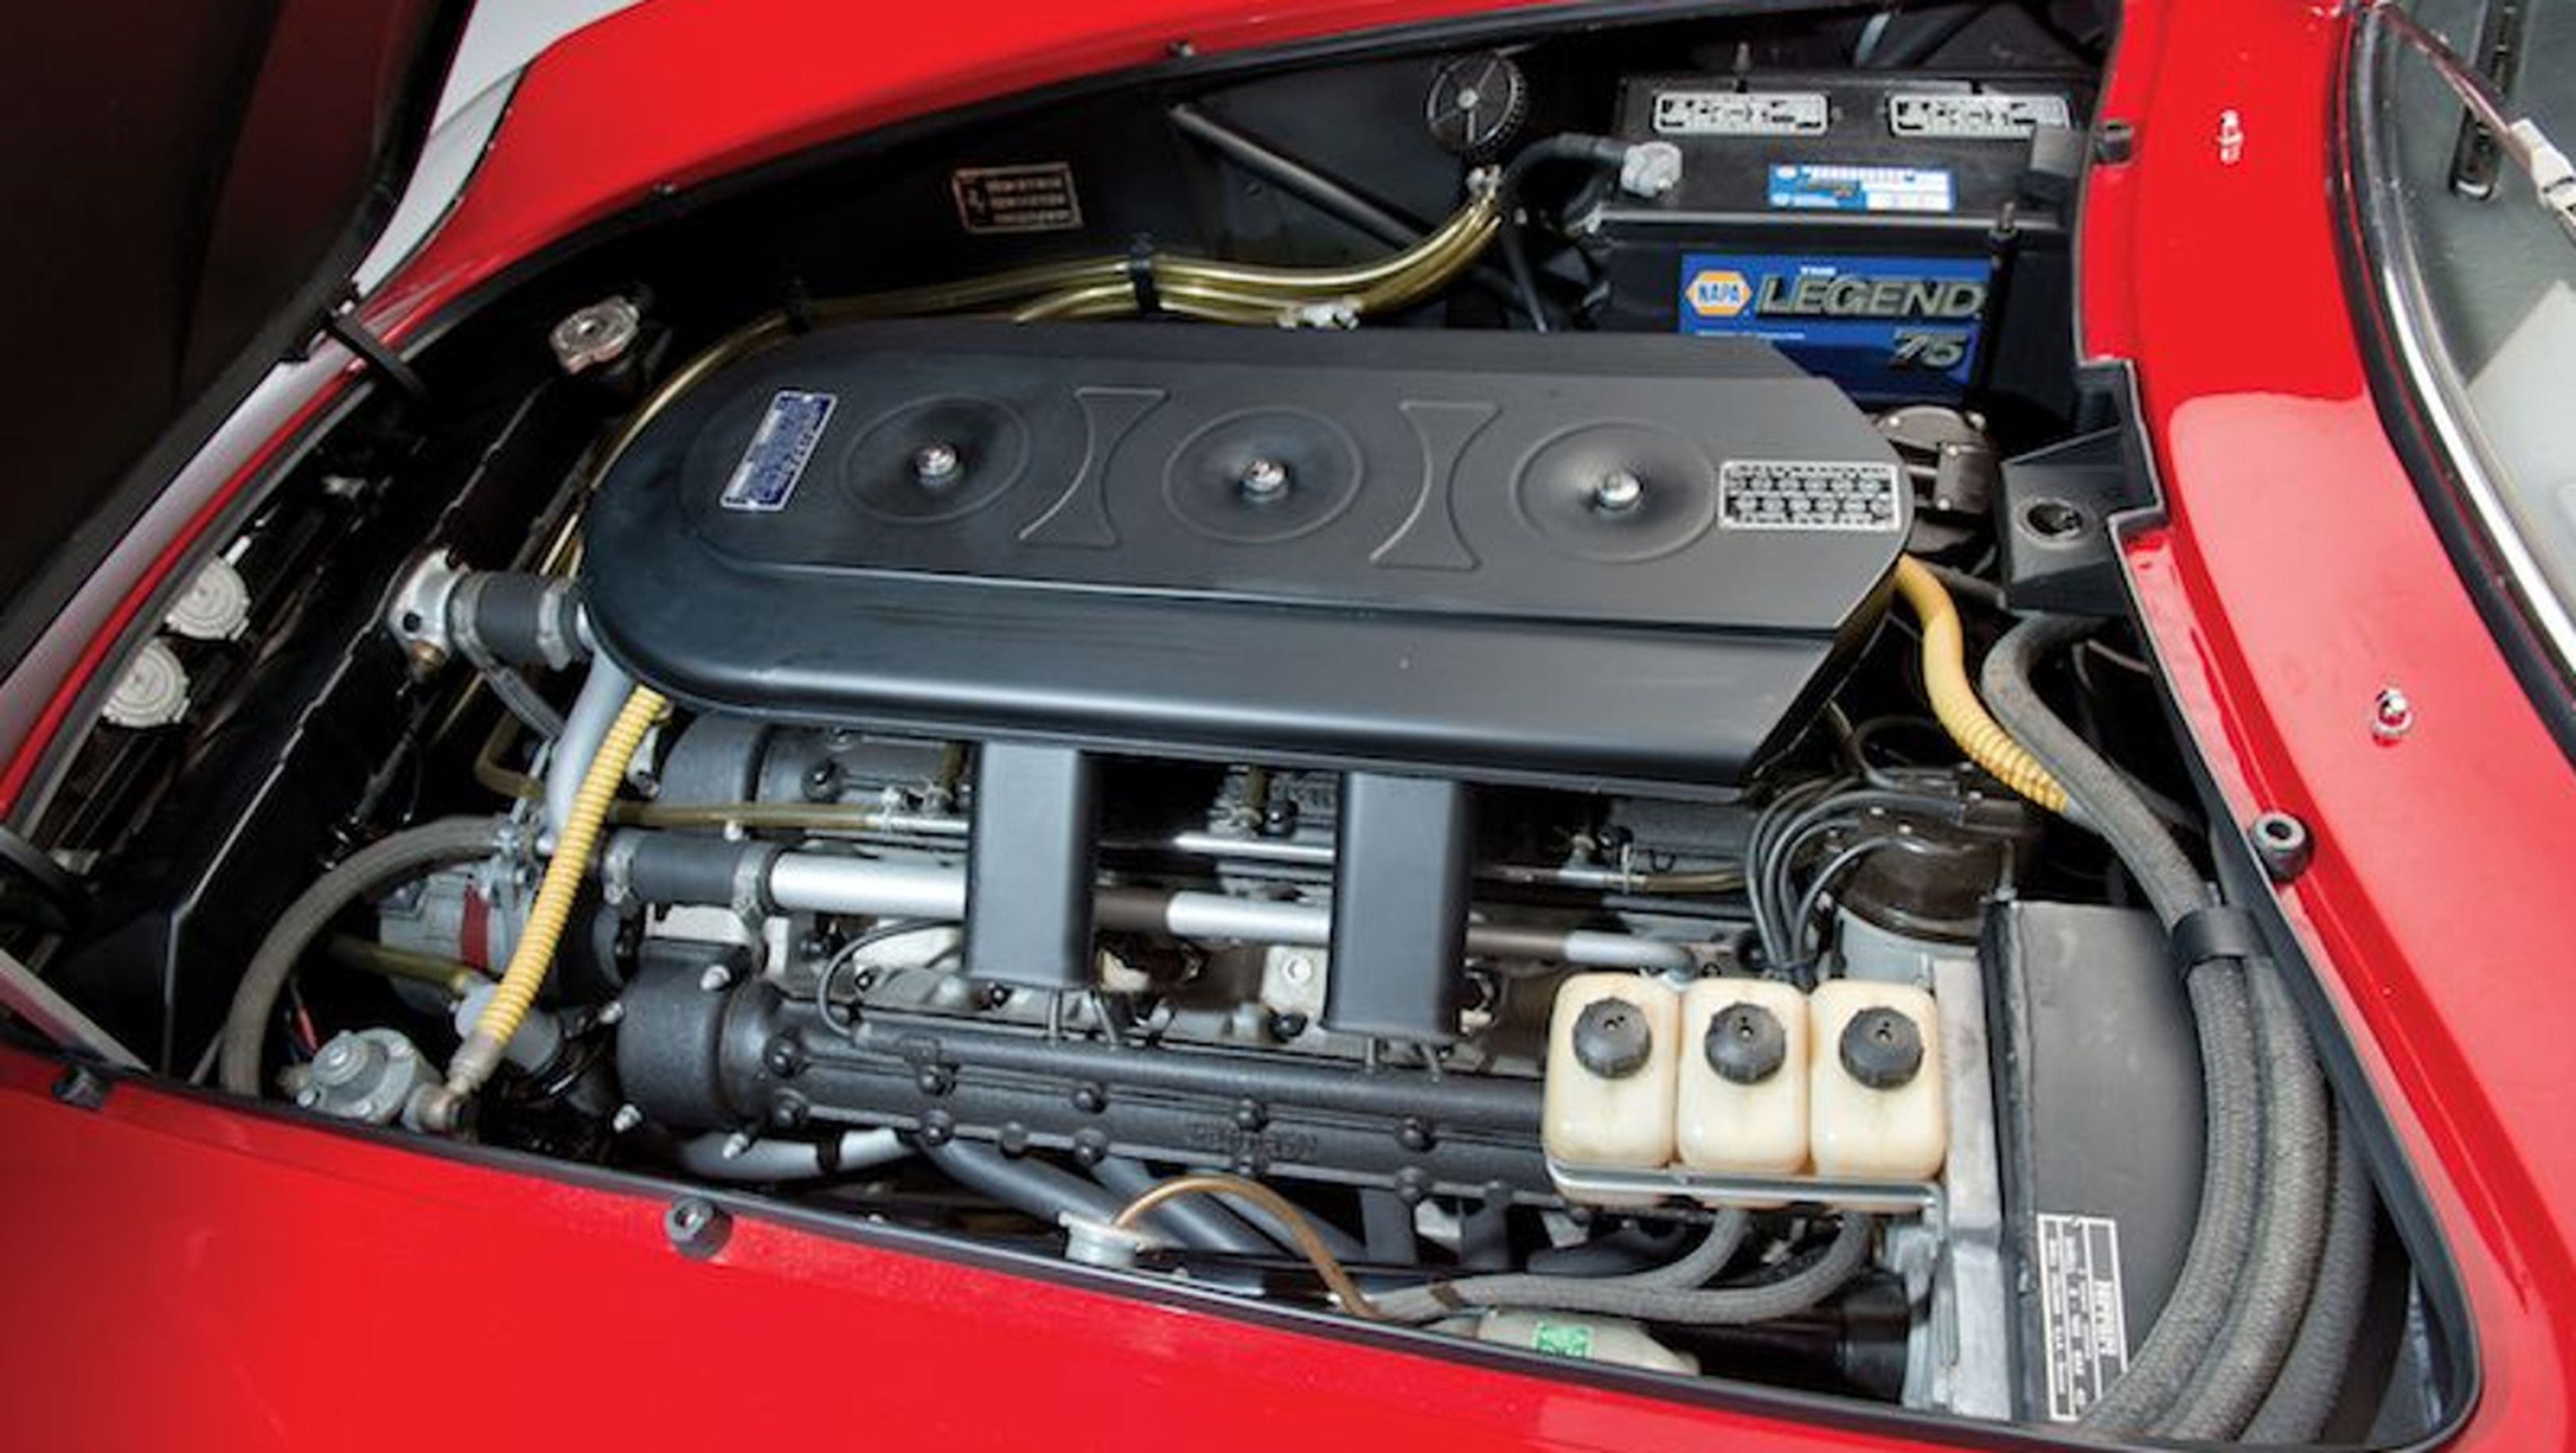 1967 Ferrari 275 GTB4 N.A.R.T. Spider engine